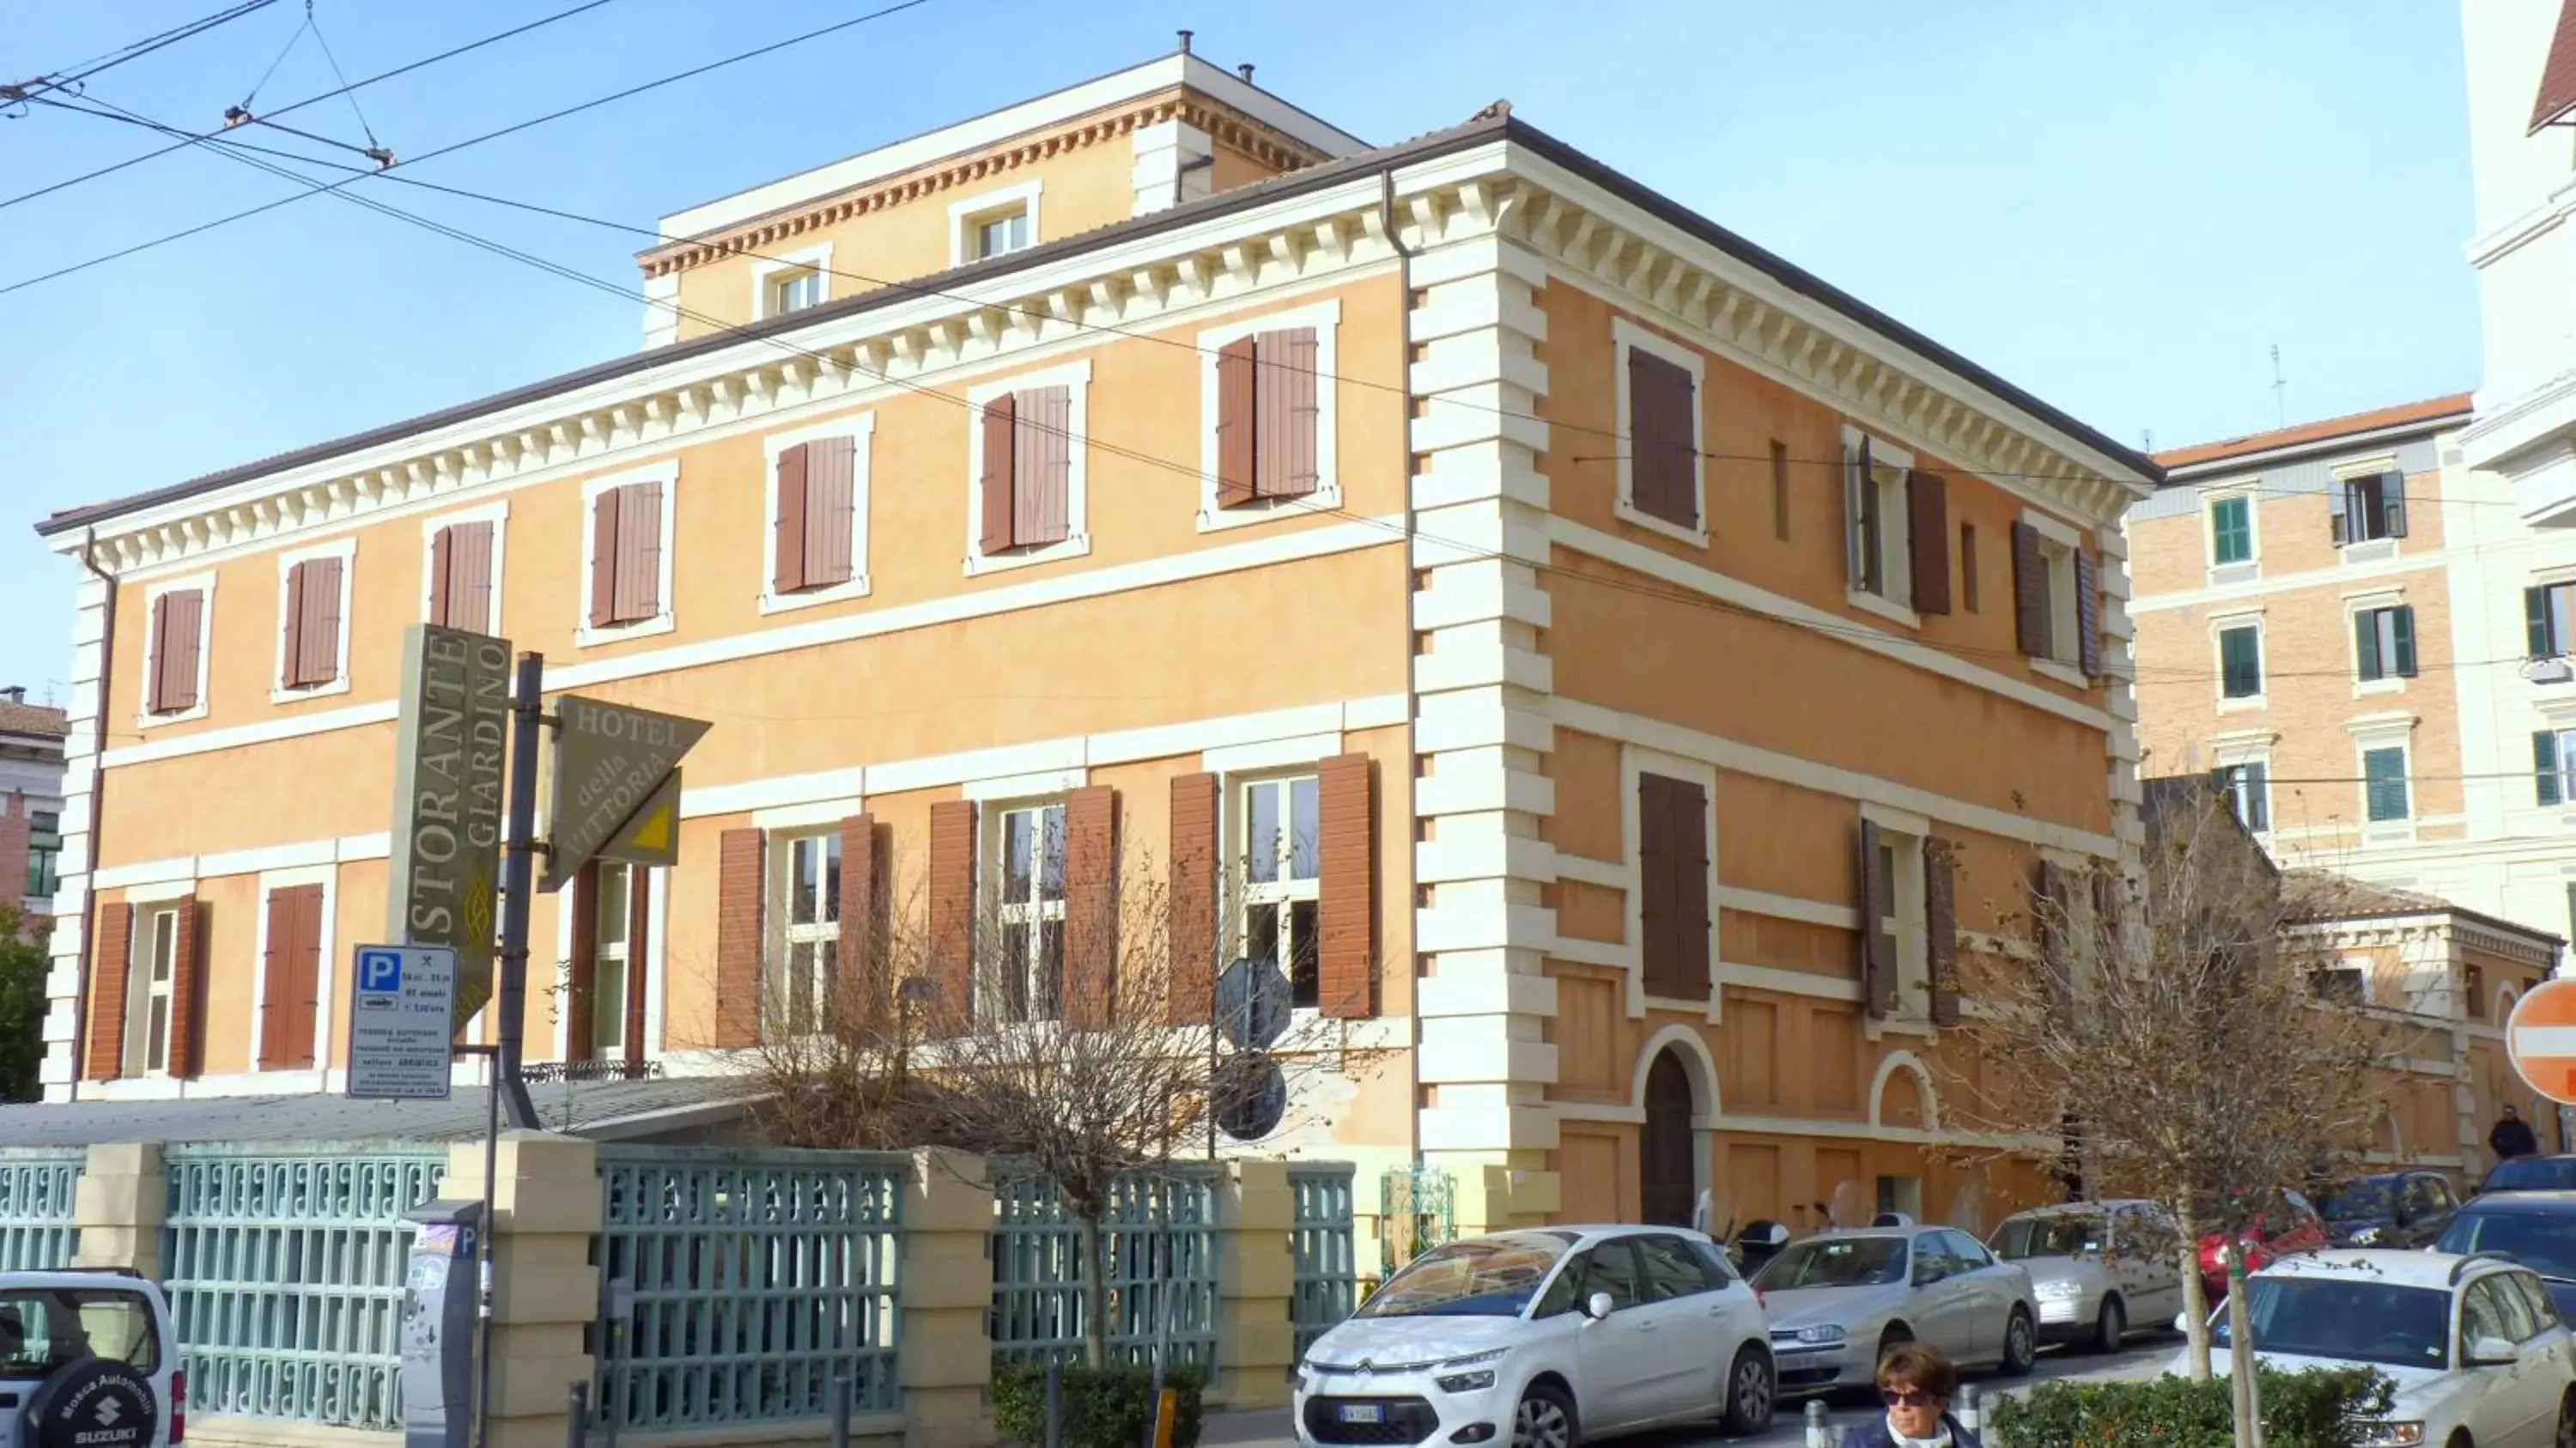 Facade/entrance, Property Building in Hotel della Vittoria